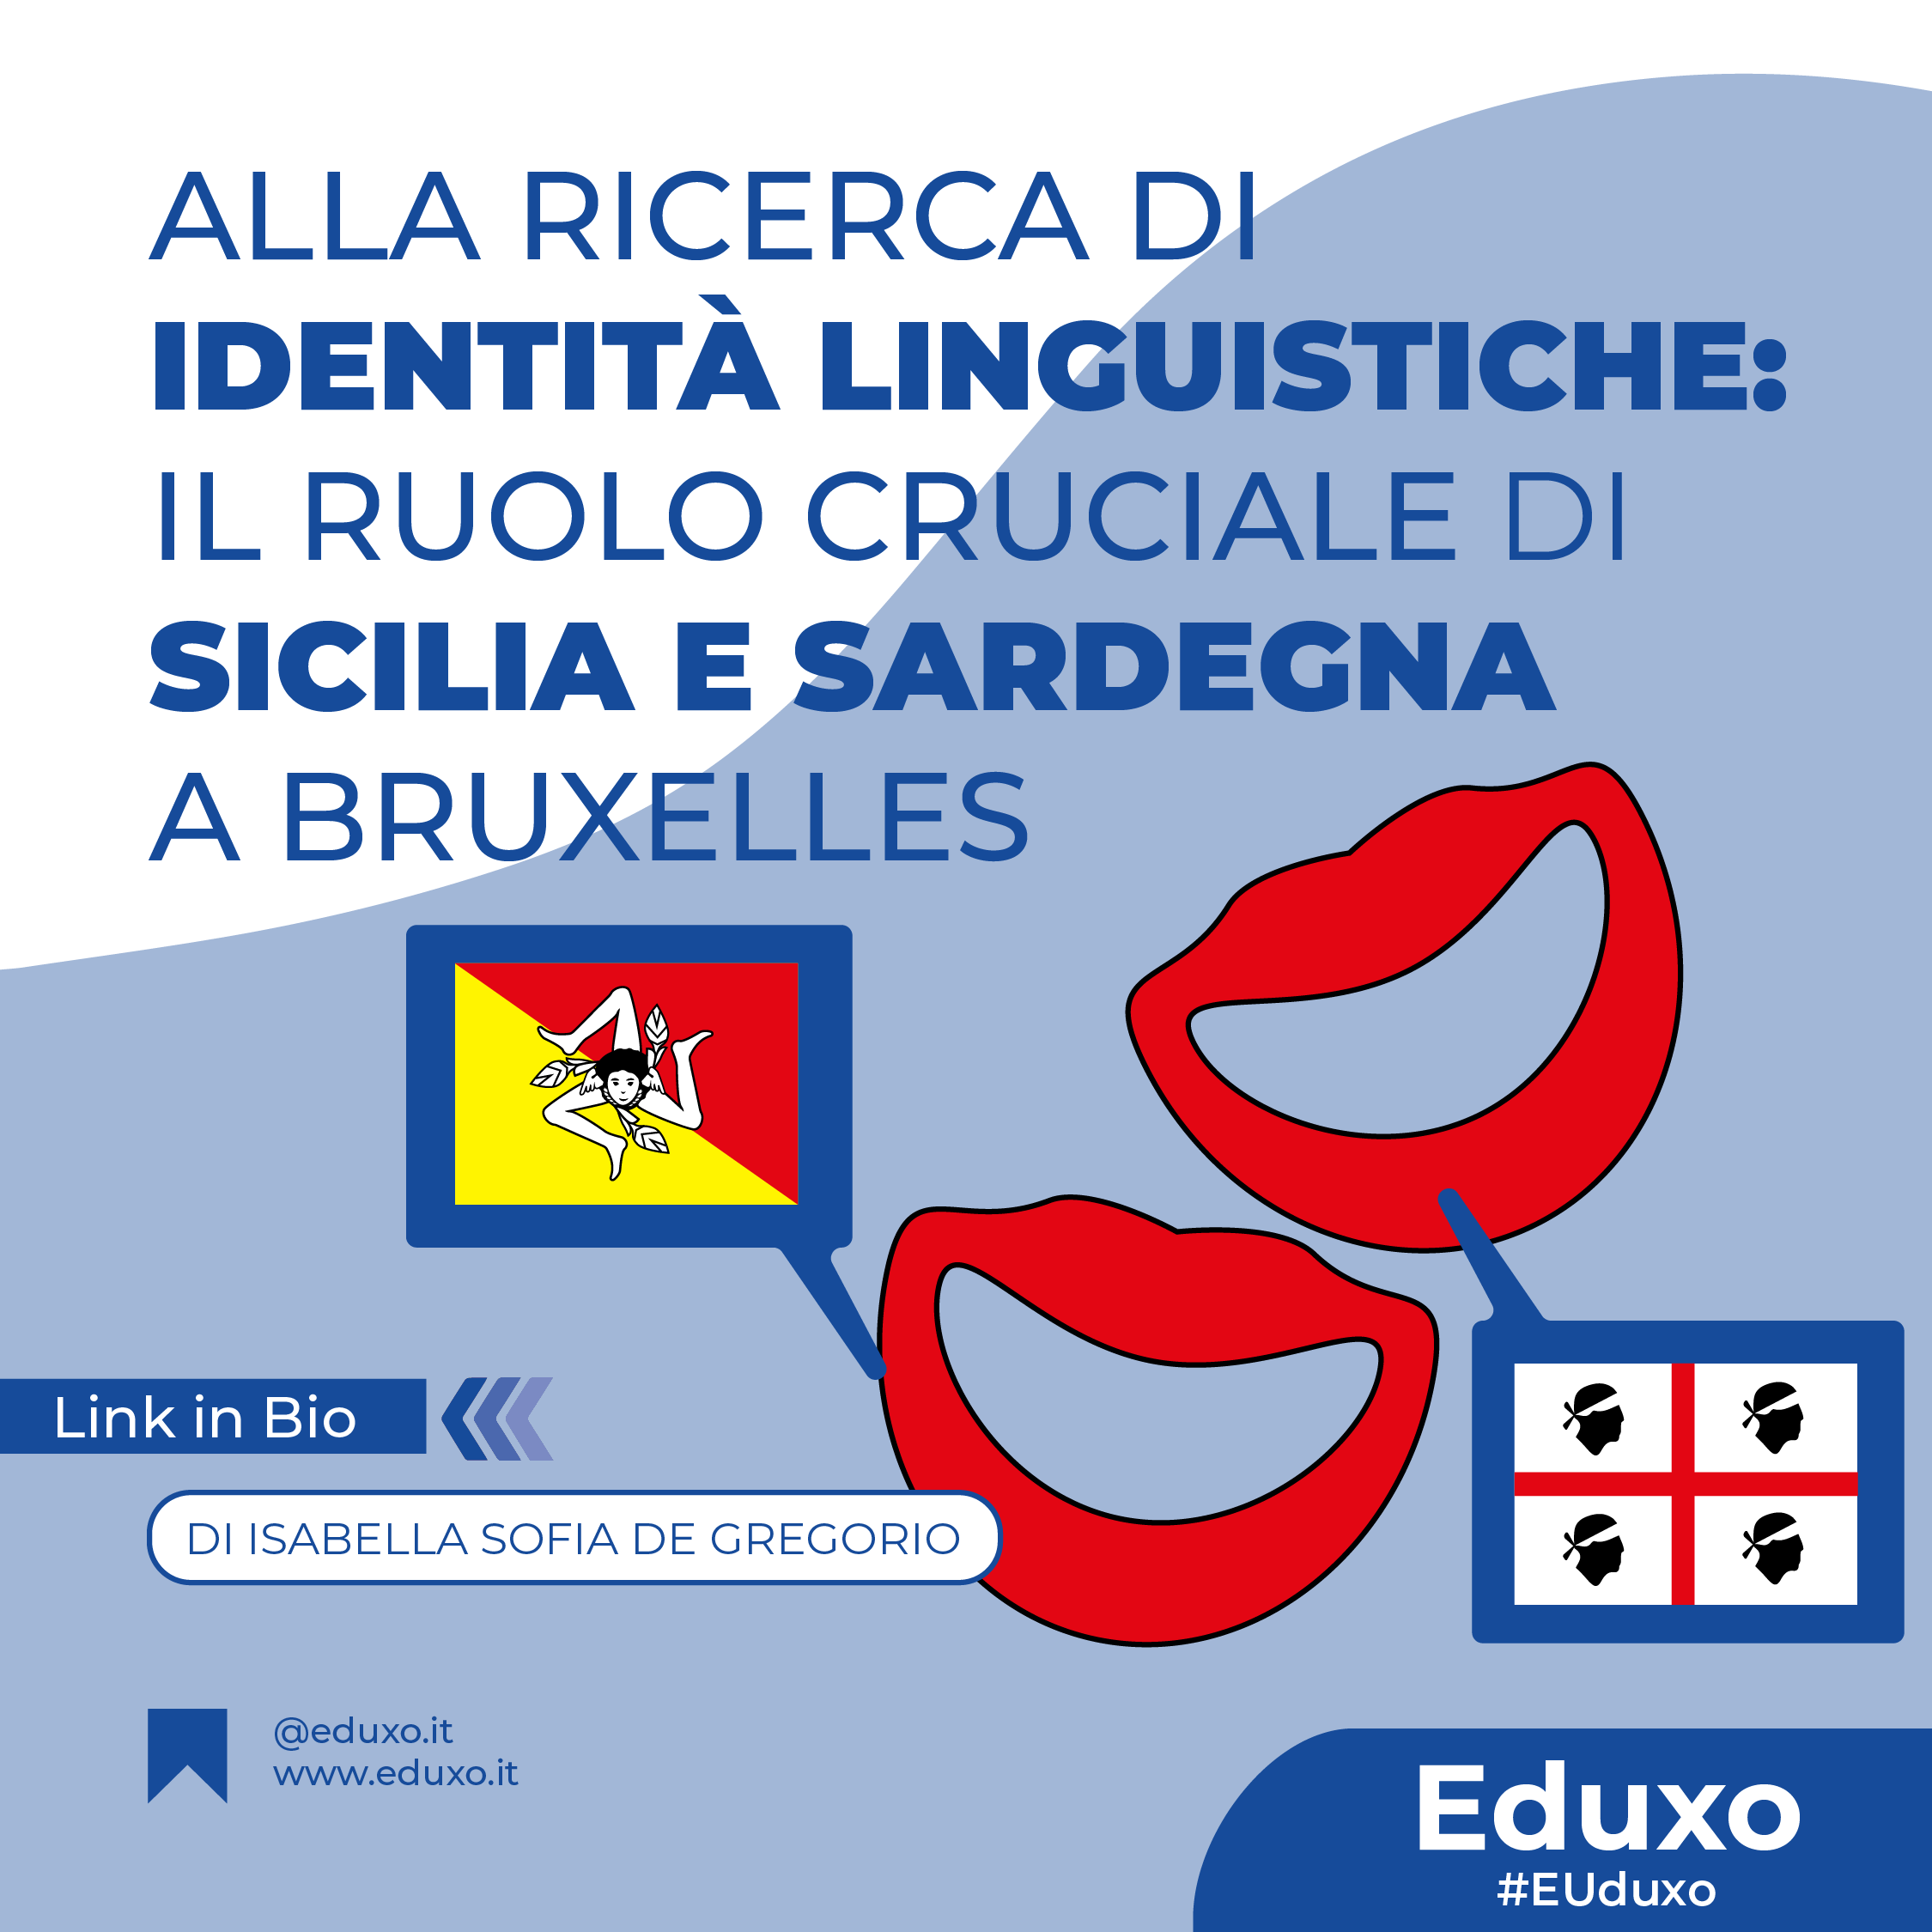 Alla Ricerca di Identità Linguistiche: Il Ruolo Cruciale di Sicilia e Sardegna a Bruxelles